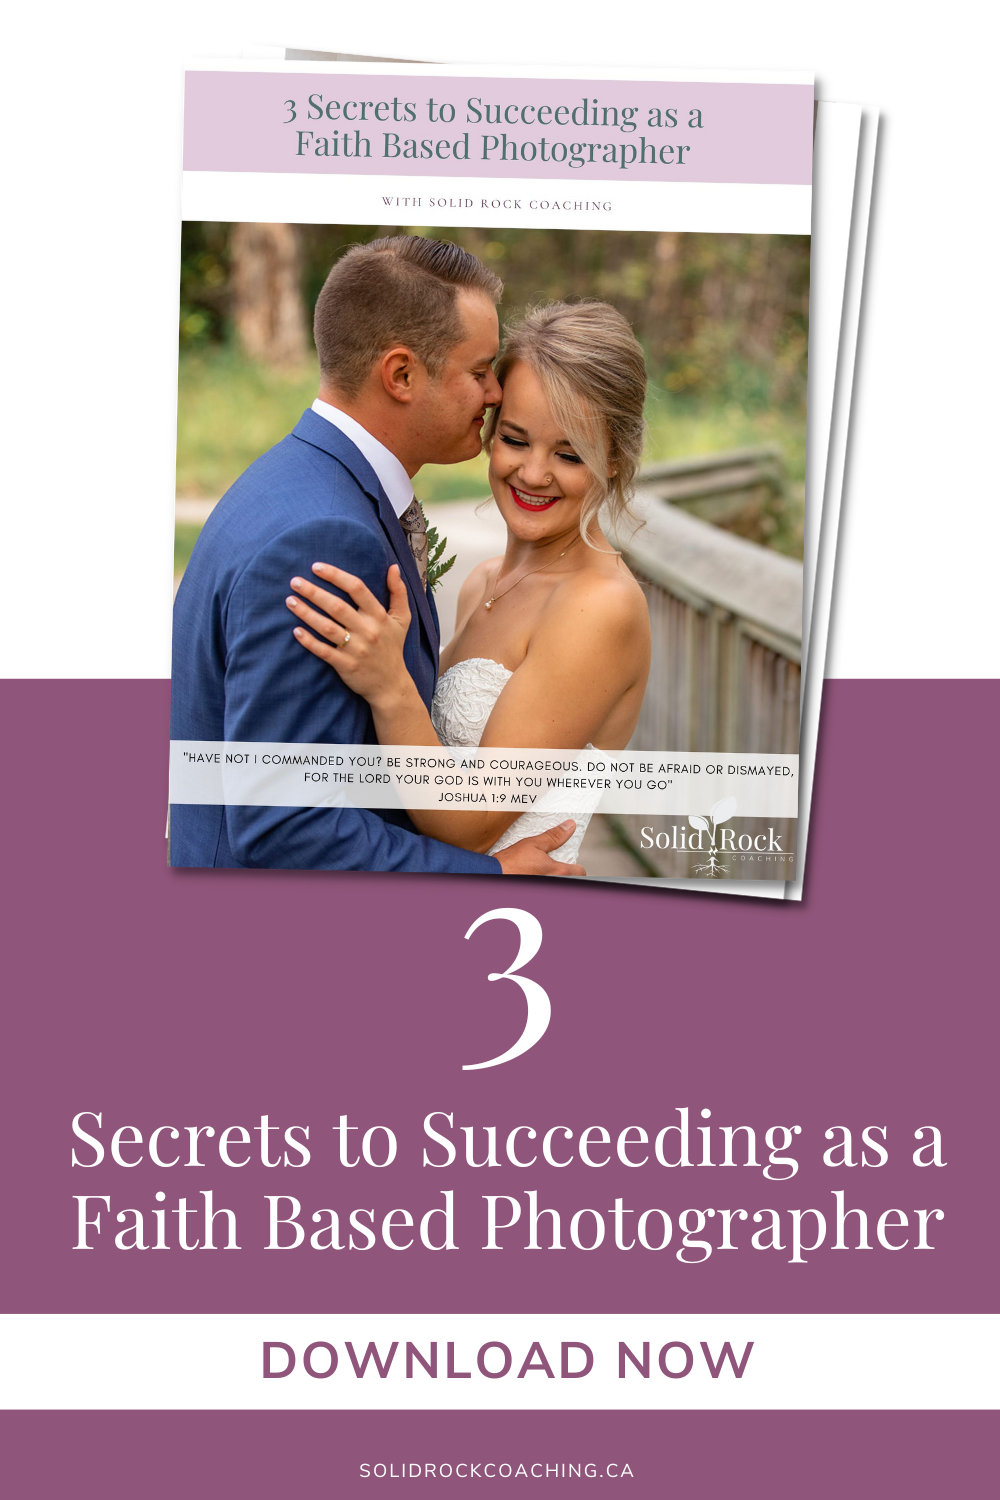 Three Secrets to Succeeding as a Faith Based Photographer